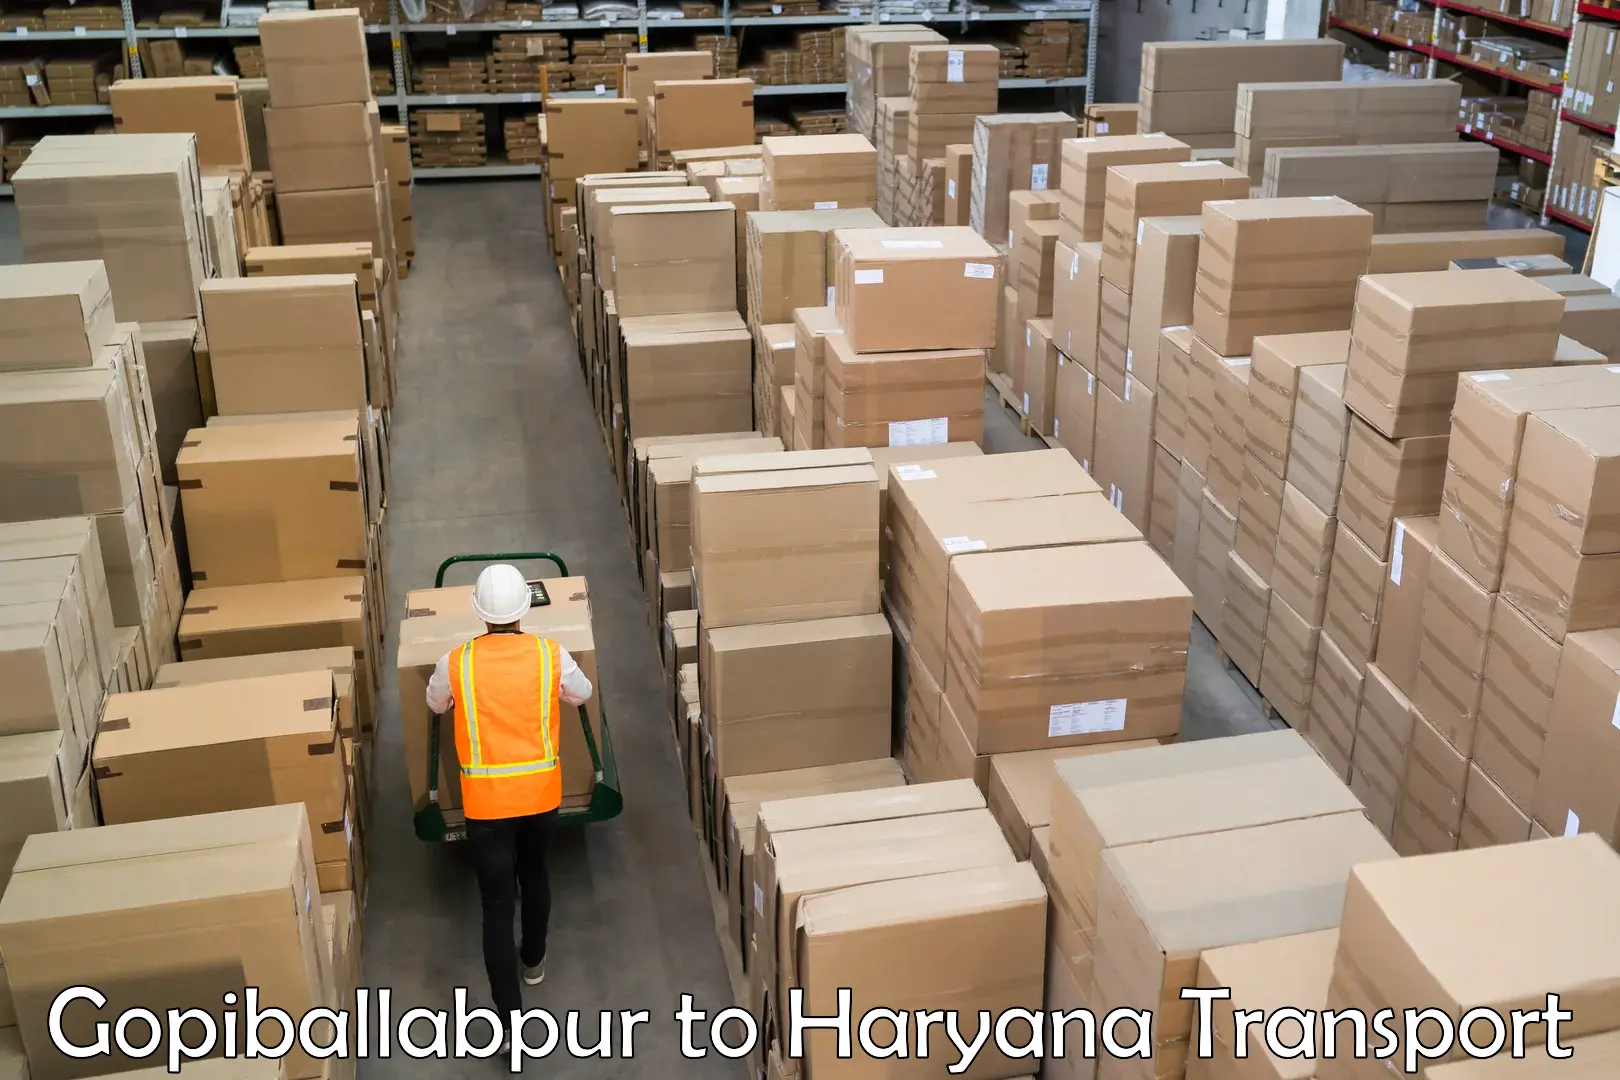 Daily parcel service transport Gopiballabpur to Shahabad Markanda